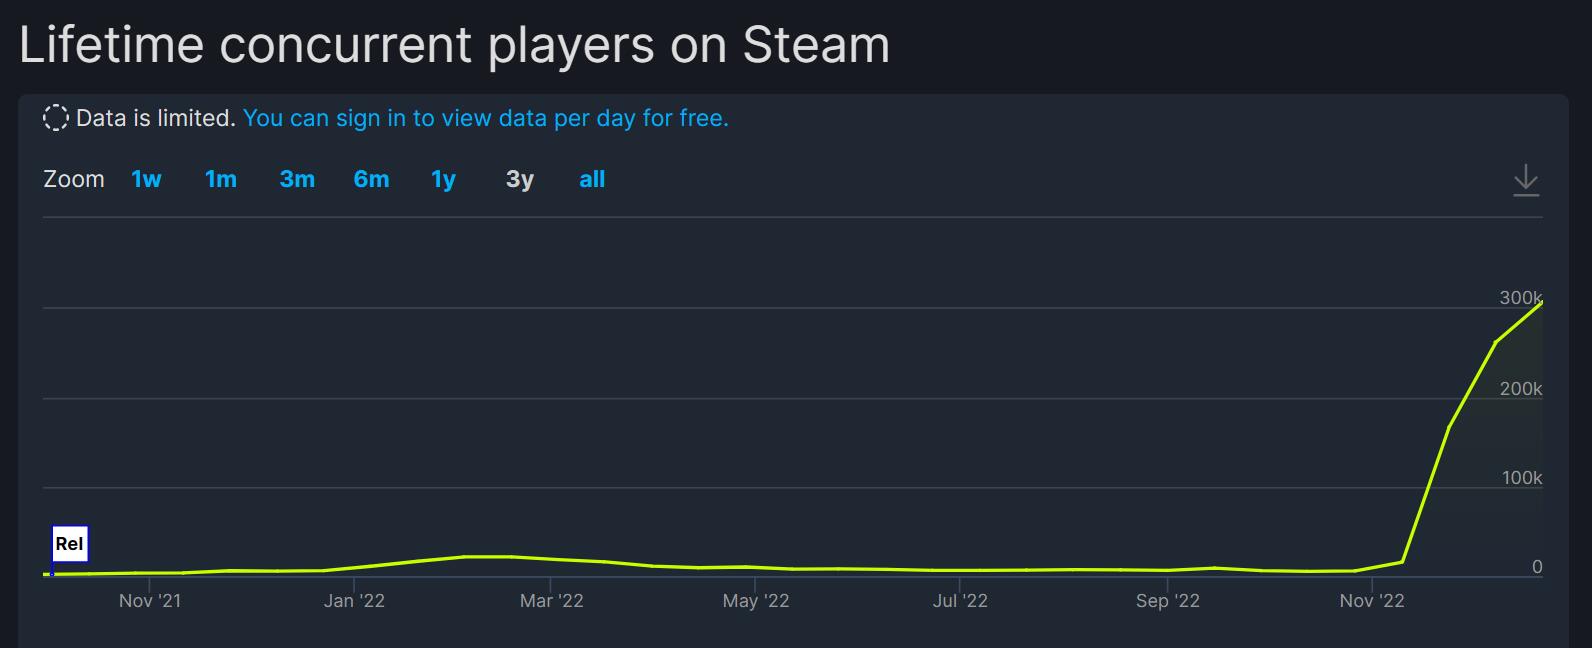 《鵝鴨殺》熱度一路飆升 Steam同時在線人數突破30萬